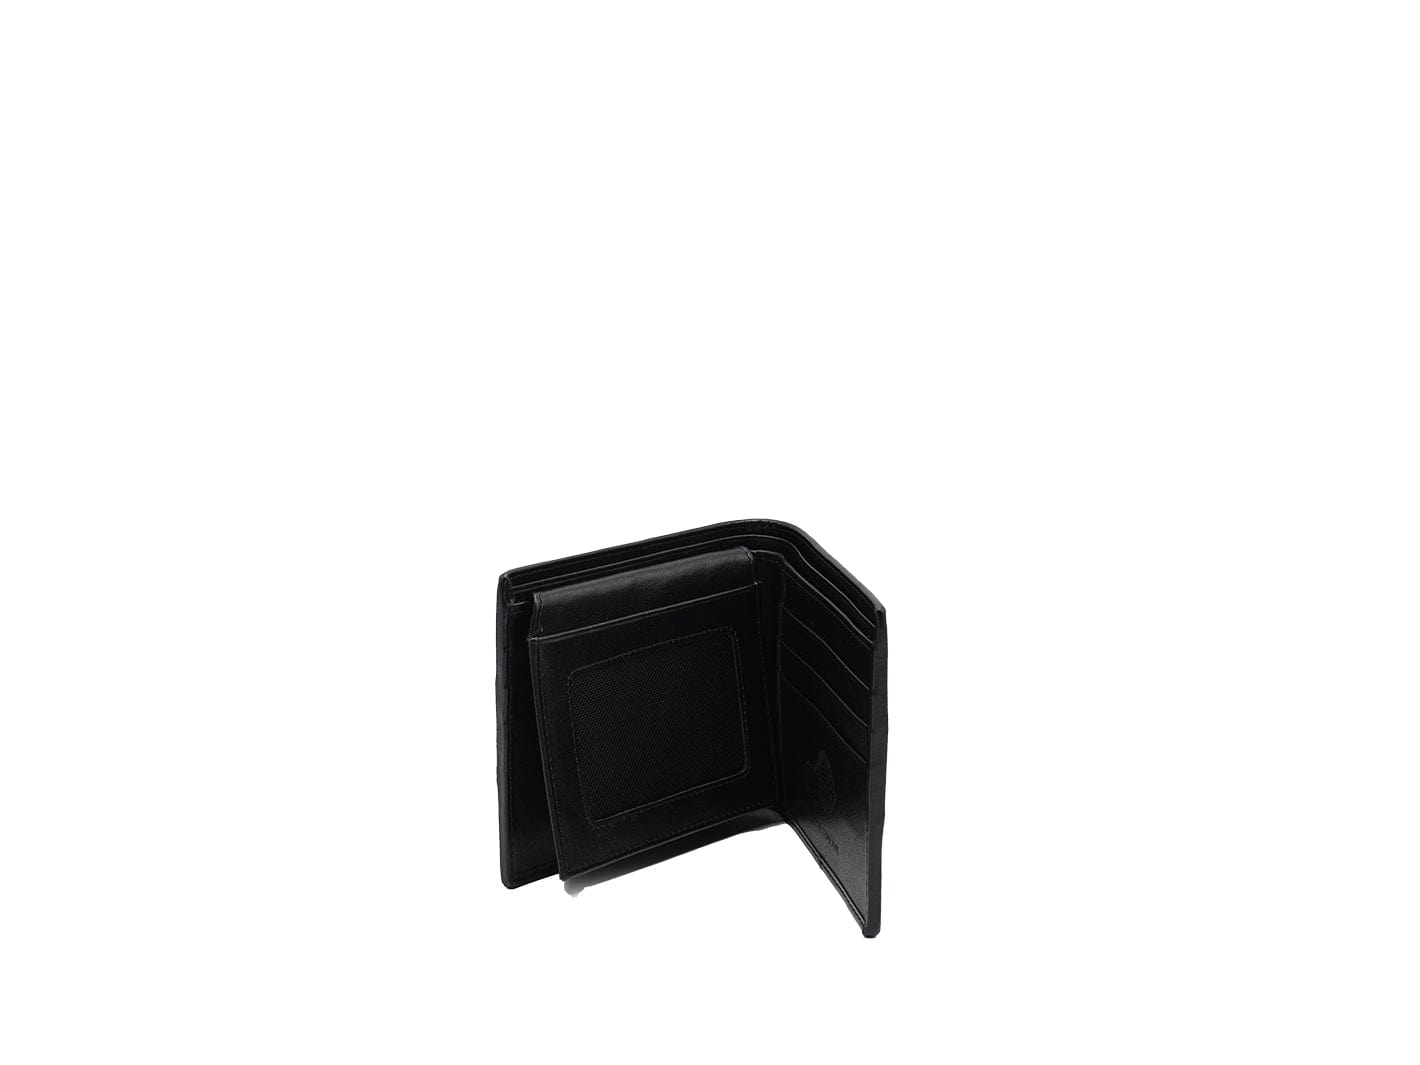 Black & White Pearl Stingray Bi-fold Leather Wallet